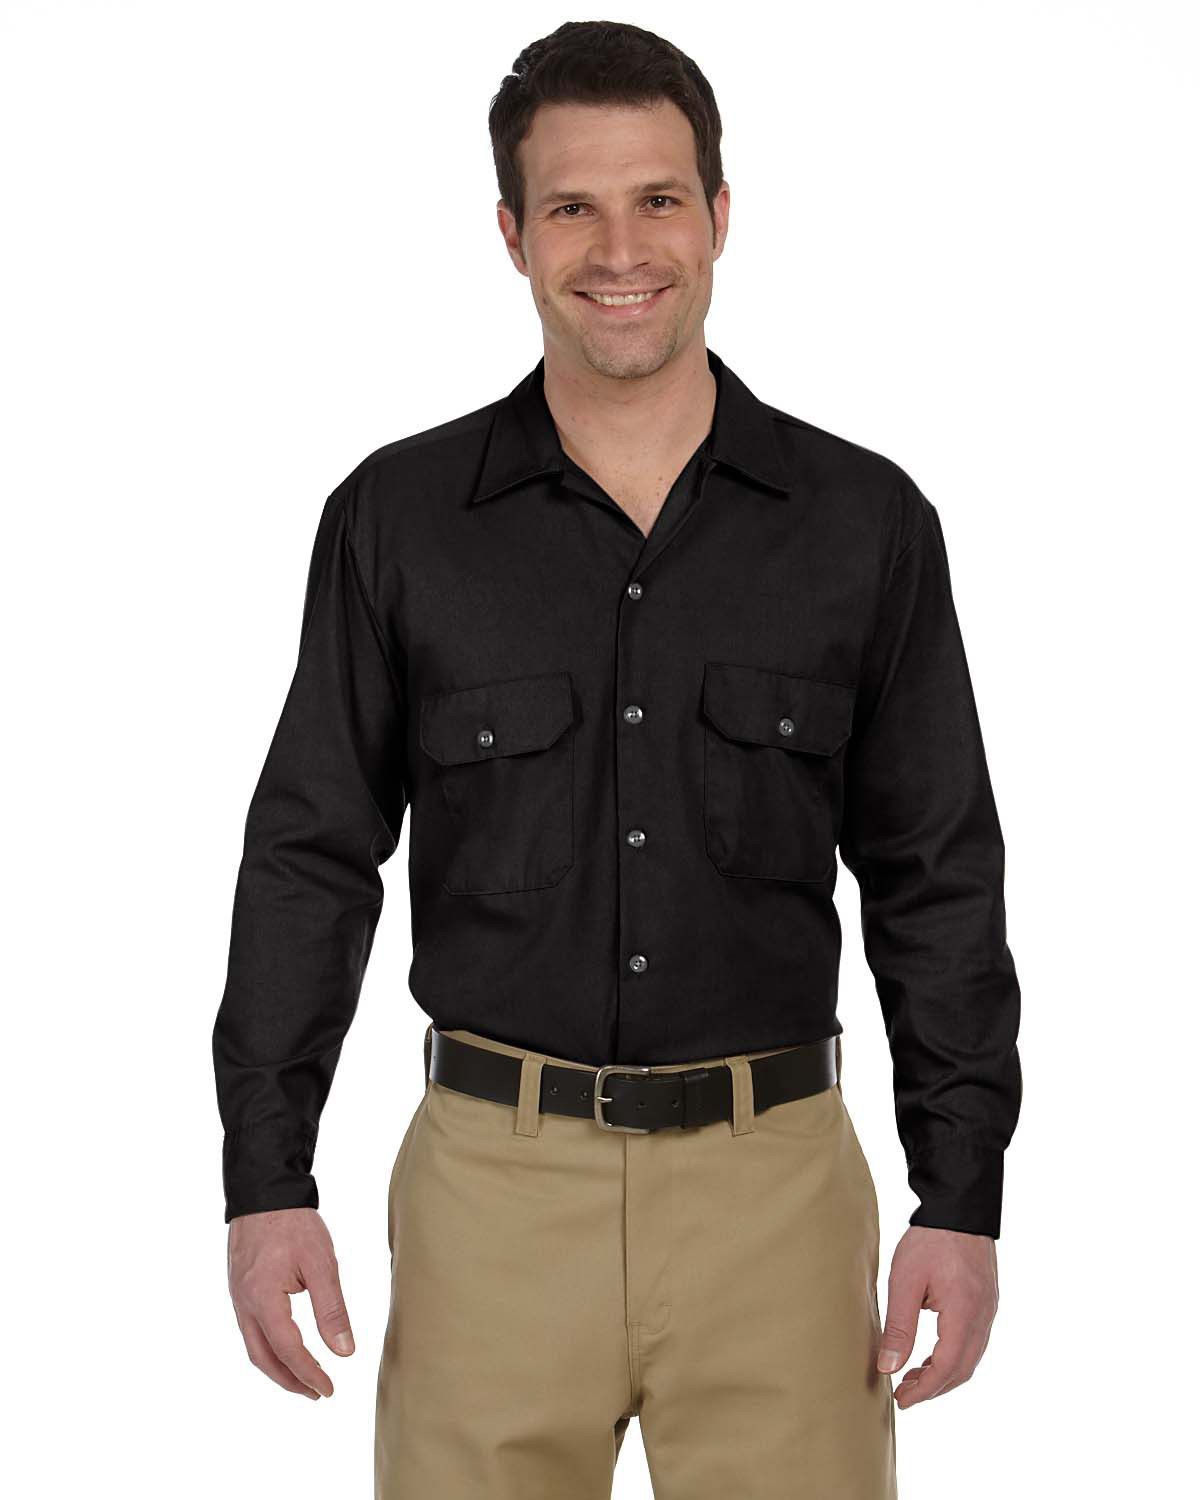 DICKIES 574 Men's Long Sleeve Work Shirt Button Front Work Shirt  BROWN BIG&TALL